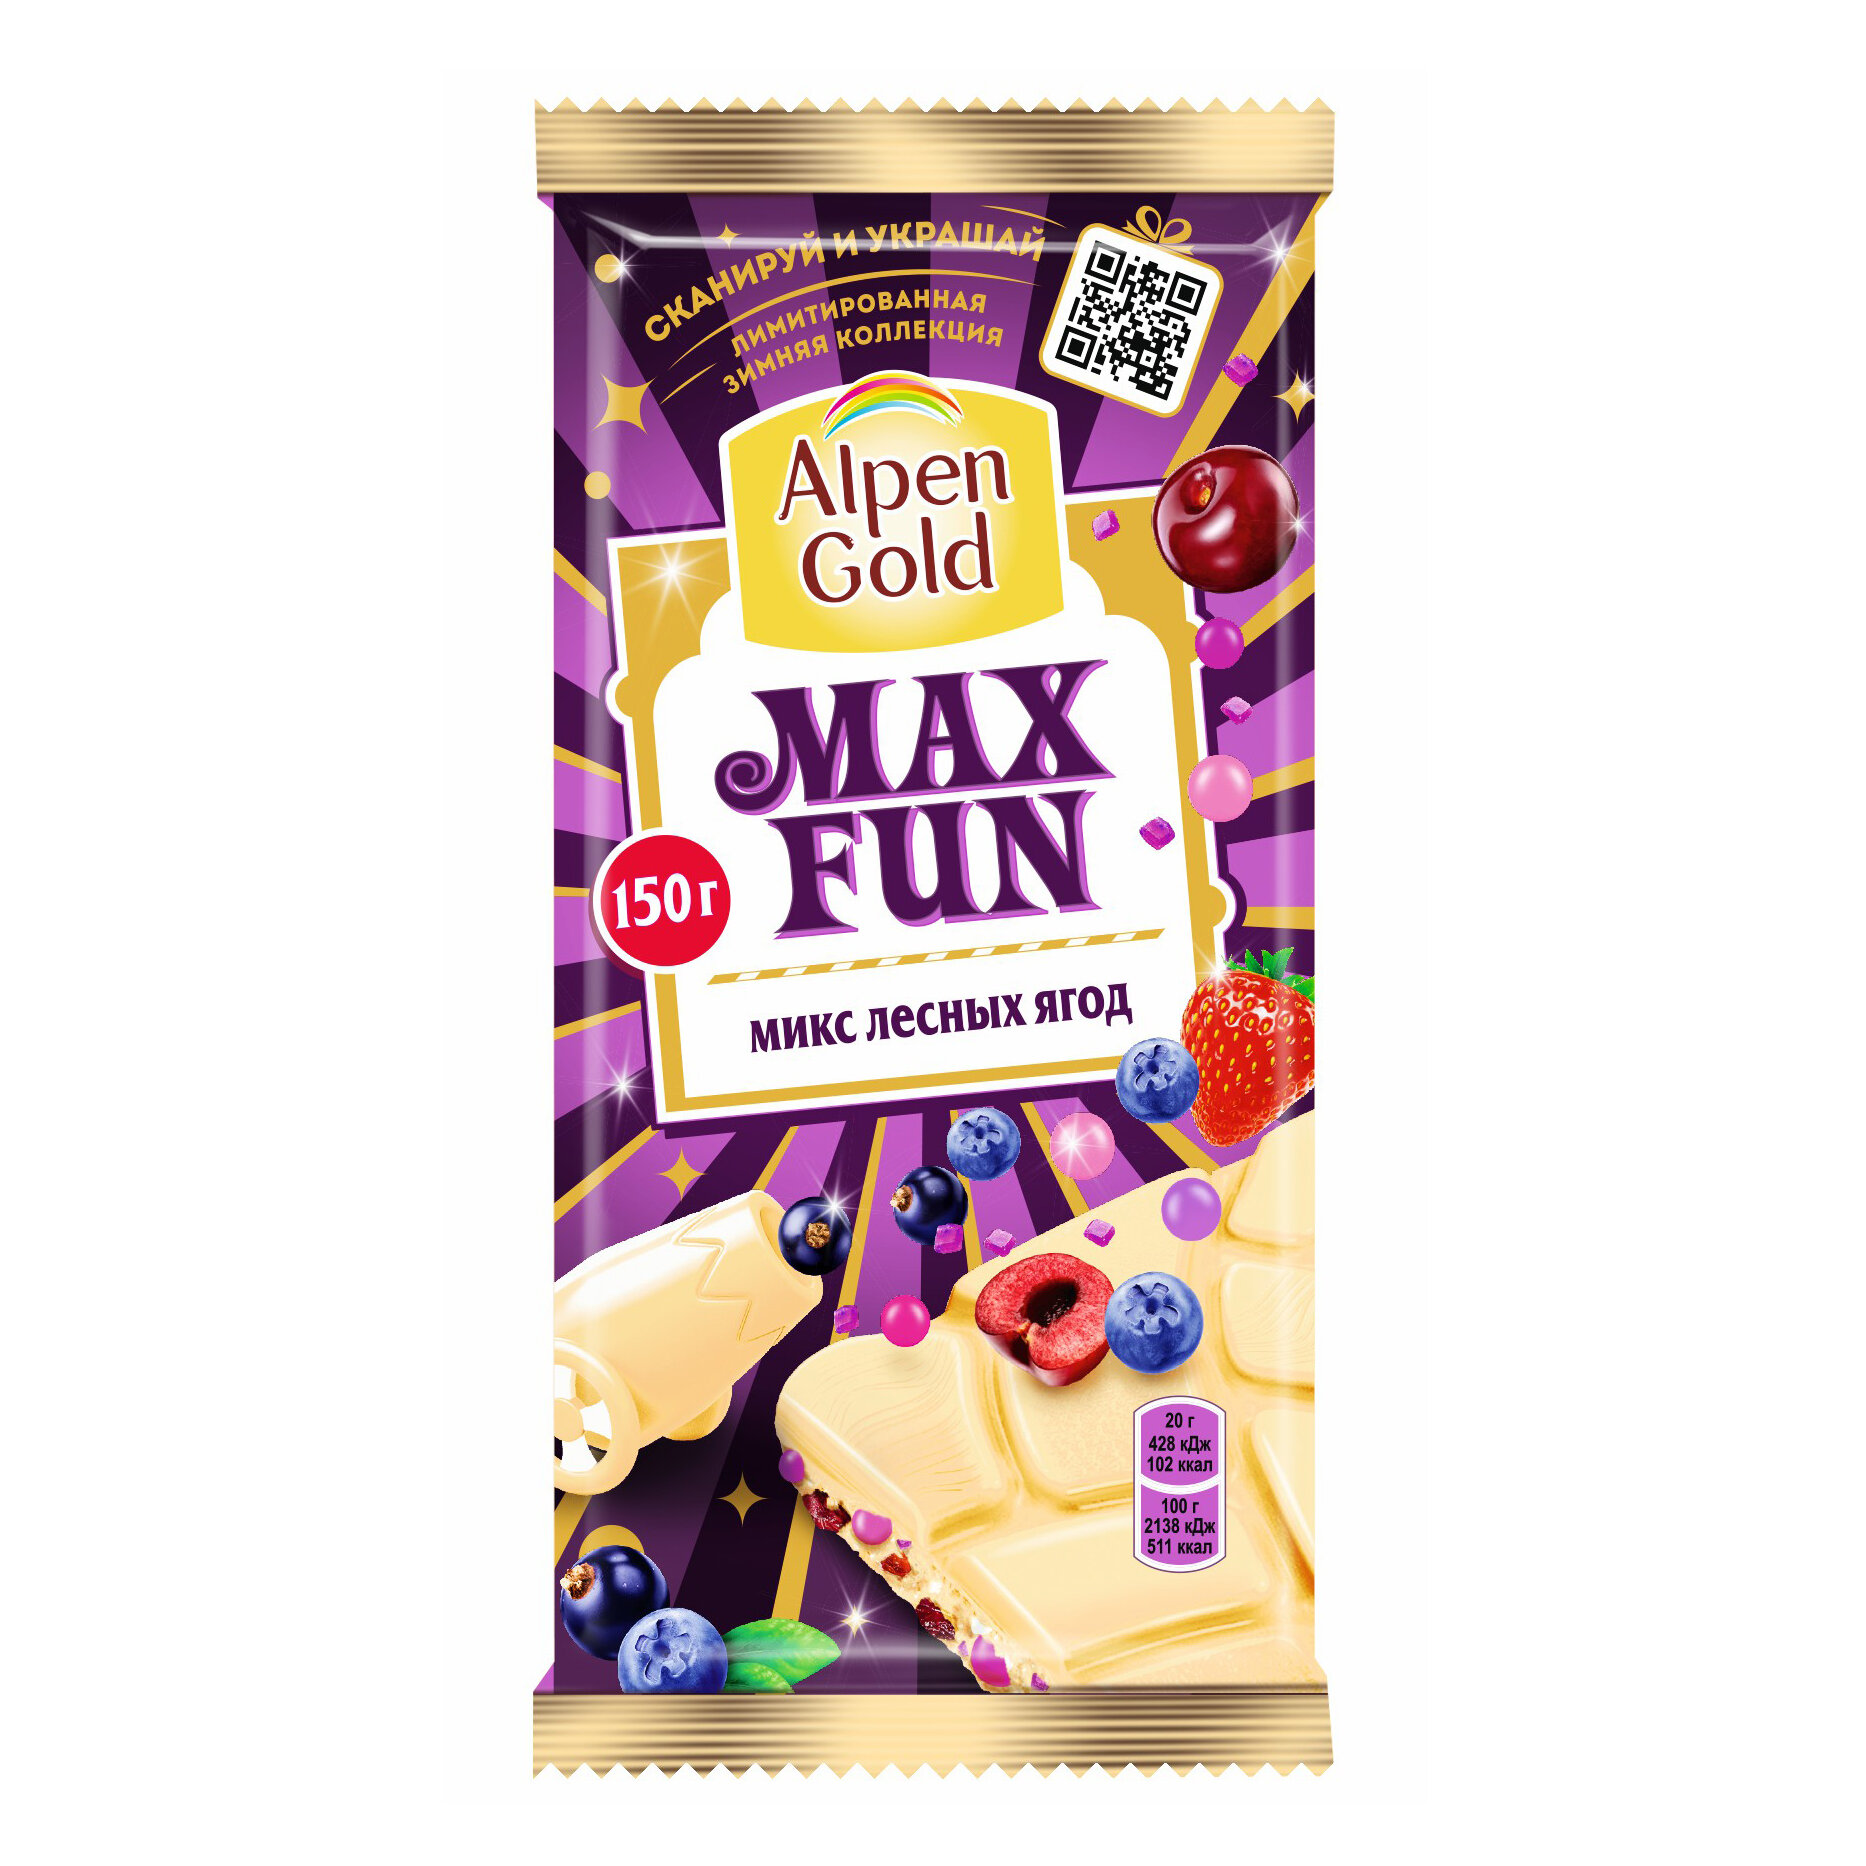 Шоколад ALPEN GOLD (альпен гольд) MaxFun белый начинка клубника, малина, черника, черная смородина, взрывная карамель, шипучие шарики 150г